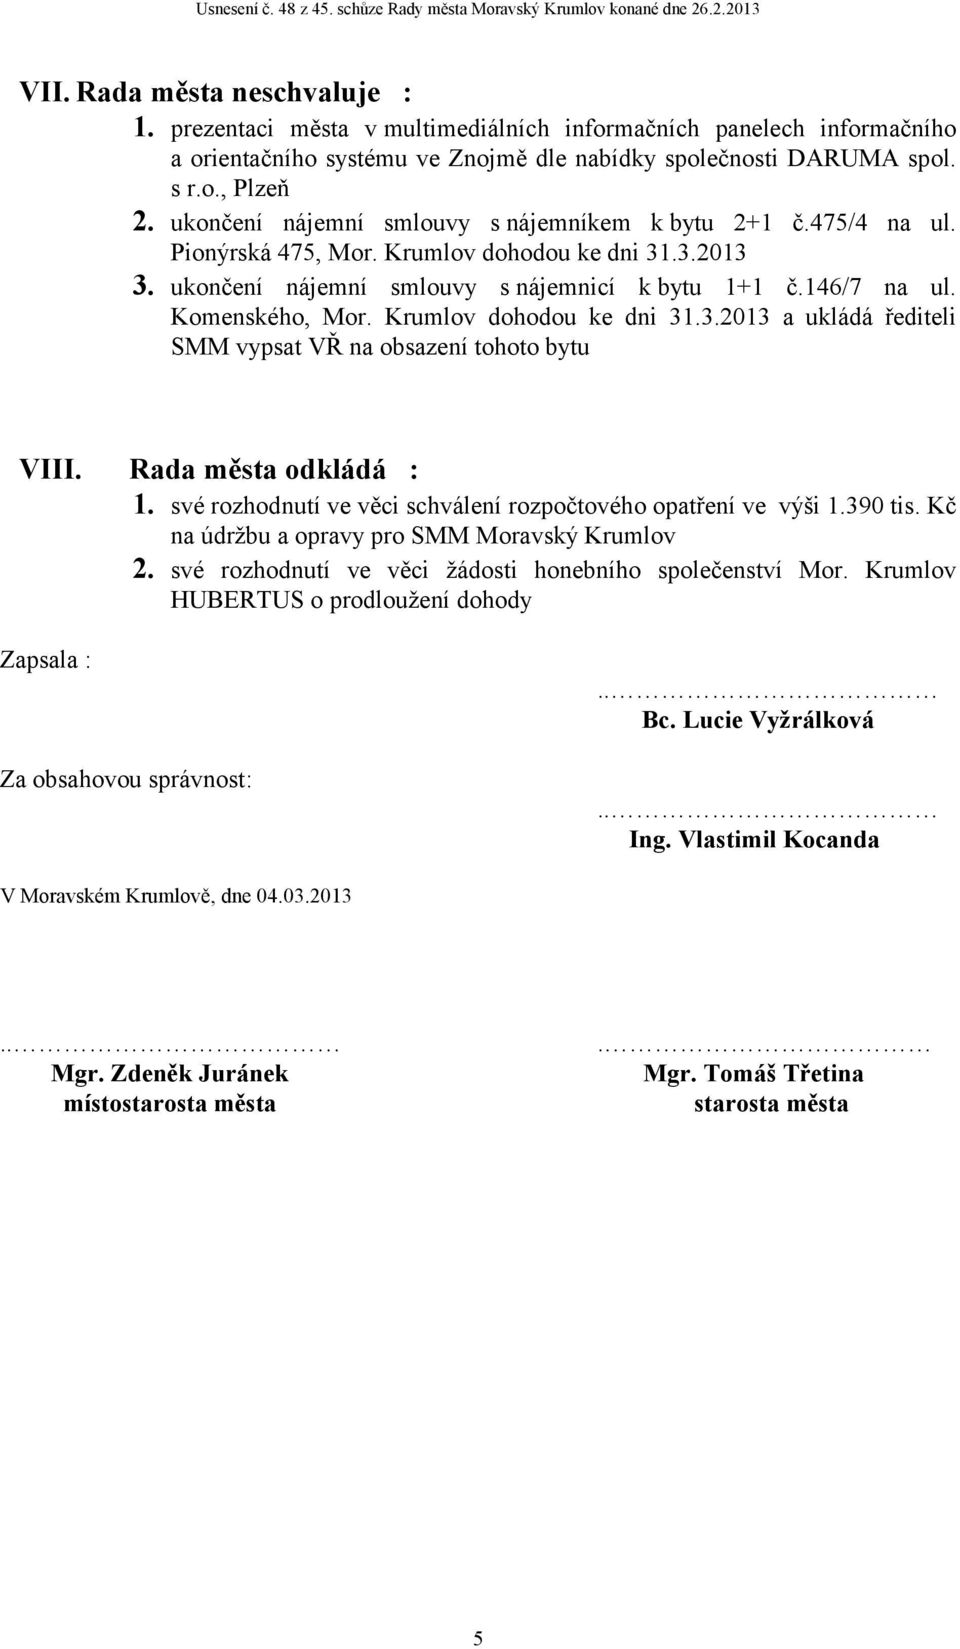 Krumlov dohodou ke dni 31.3.2013 a ukládá řediteli SMM vypsat VŘ na obsazení tohoto bytu VIII. Rada města odkládá : 1. své rozhodnutí ve věci schválení rozpočtového opatření ve výši 1.390 tis.